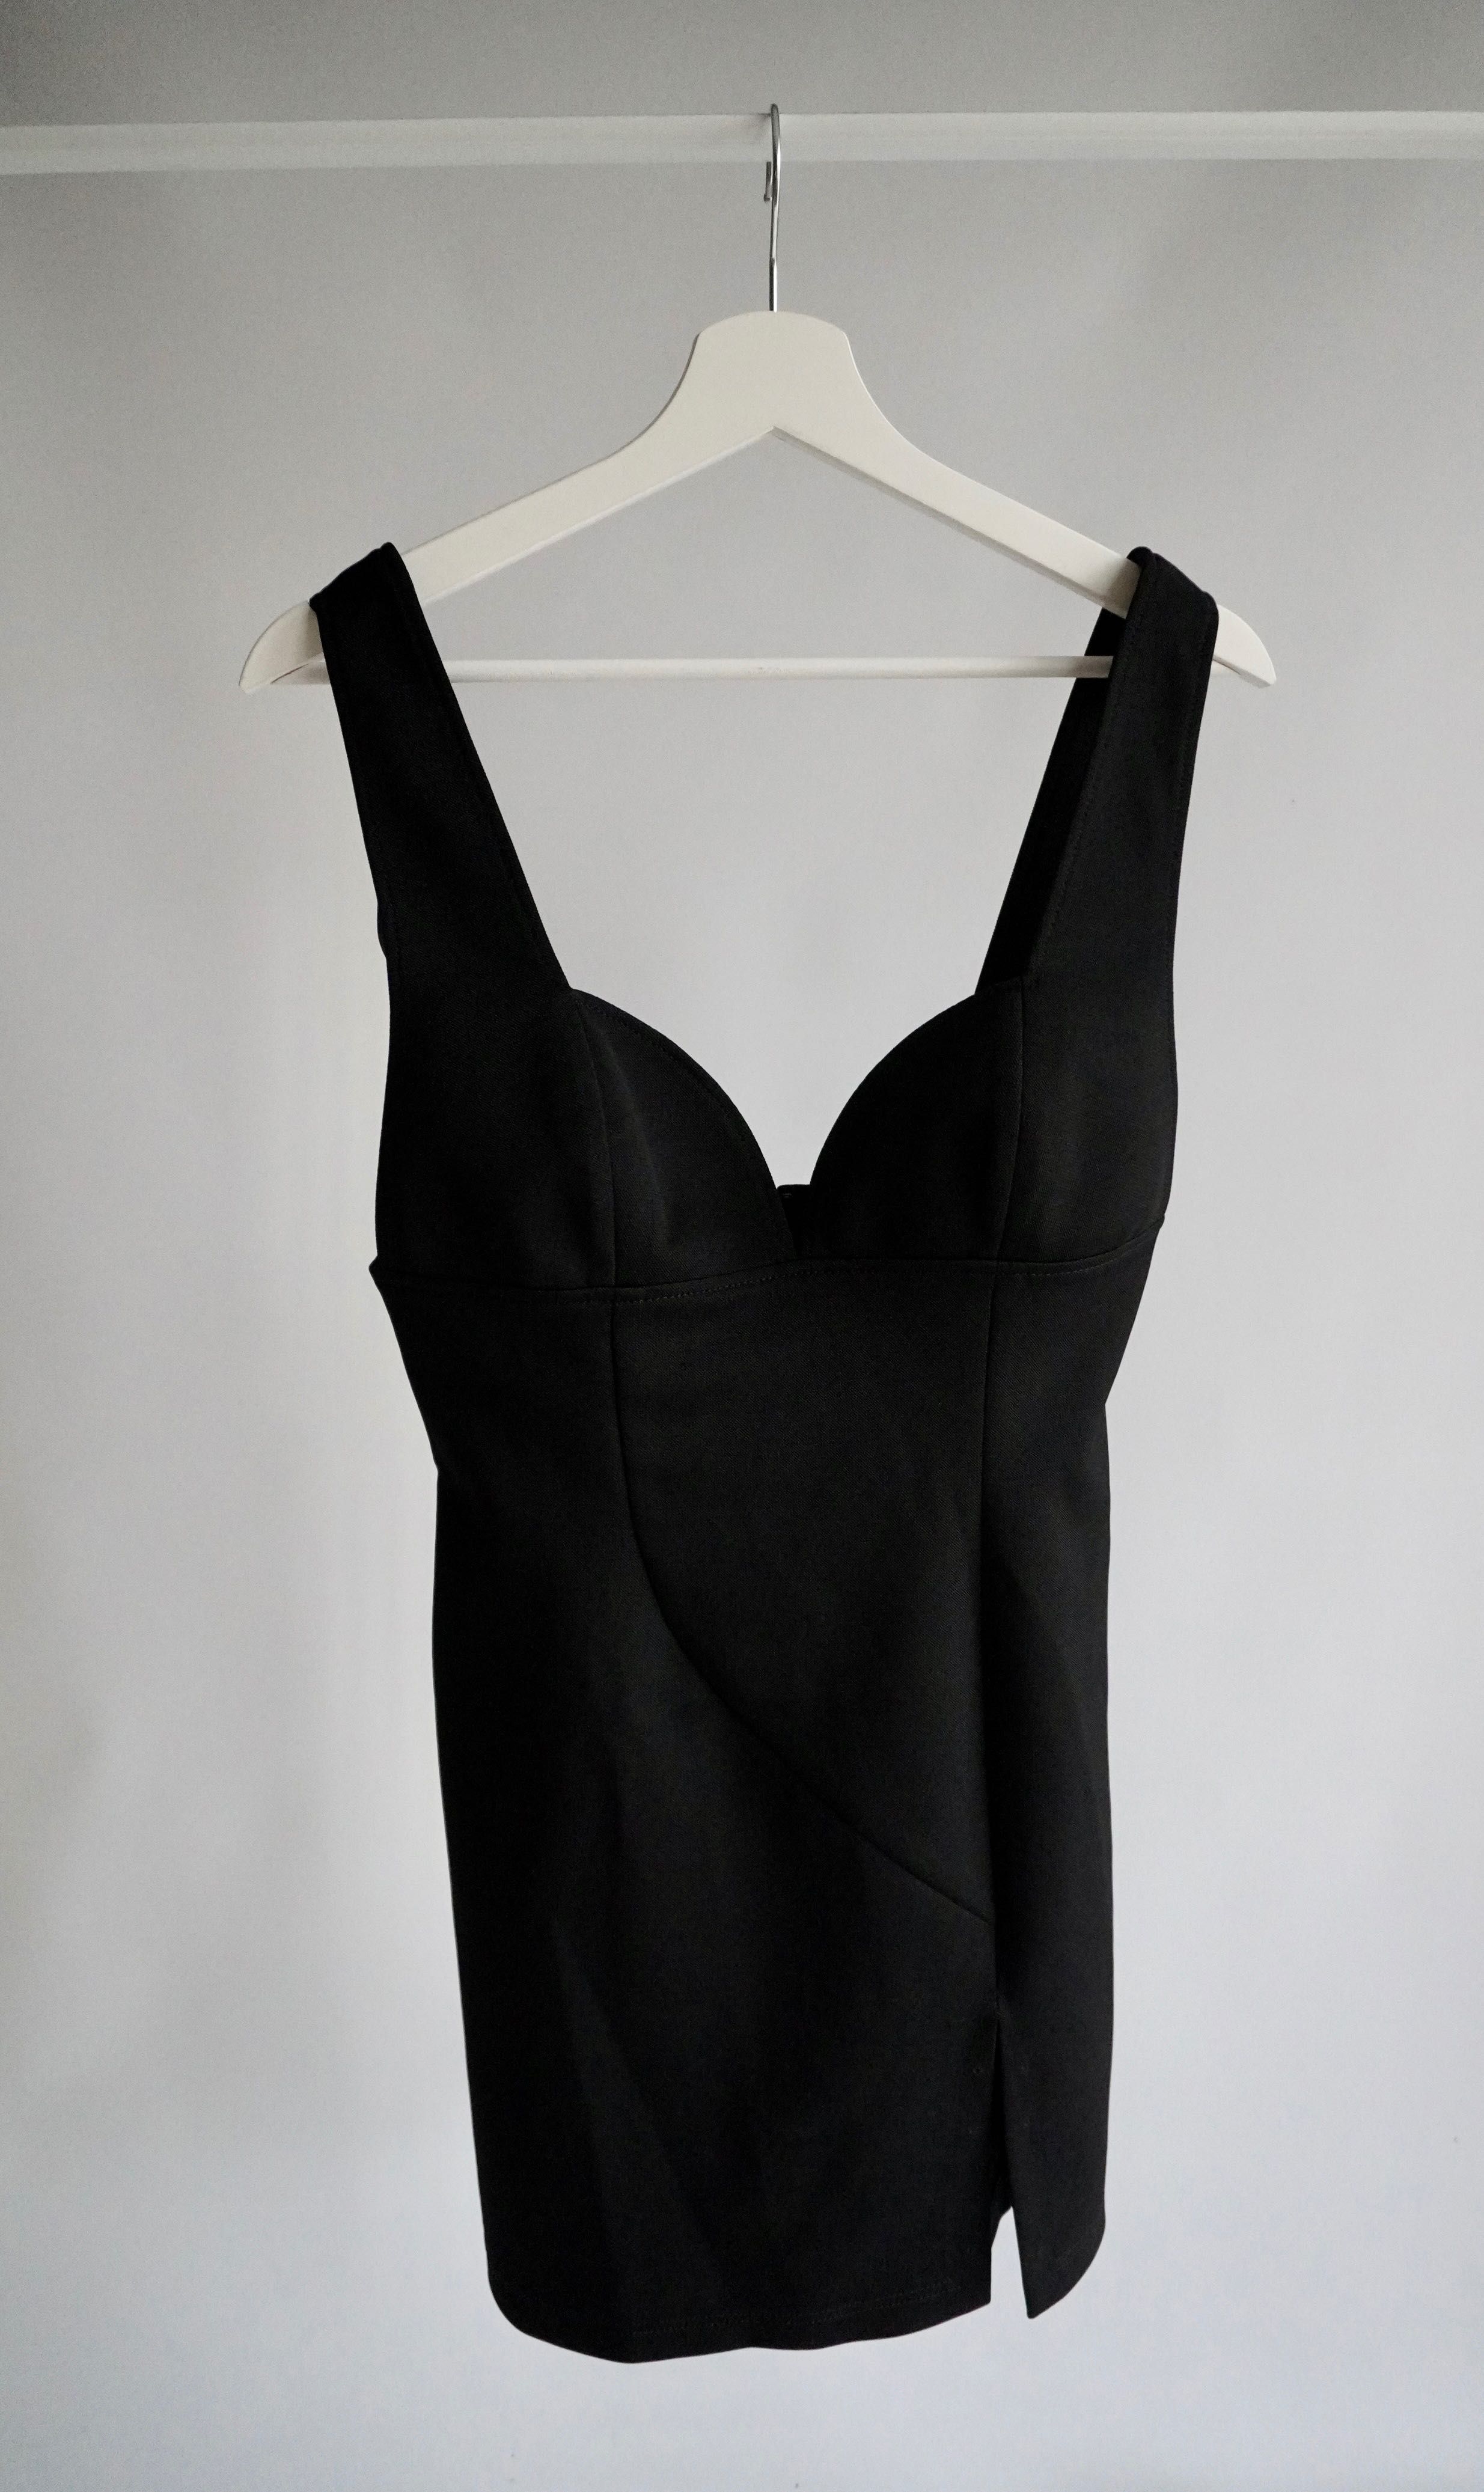 Versus Versace sukienka czarna nowa z metką 40 dekolt serduszko